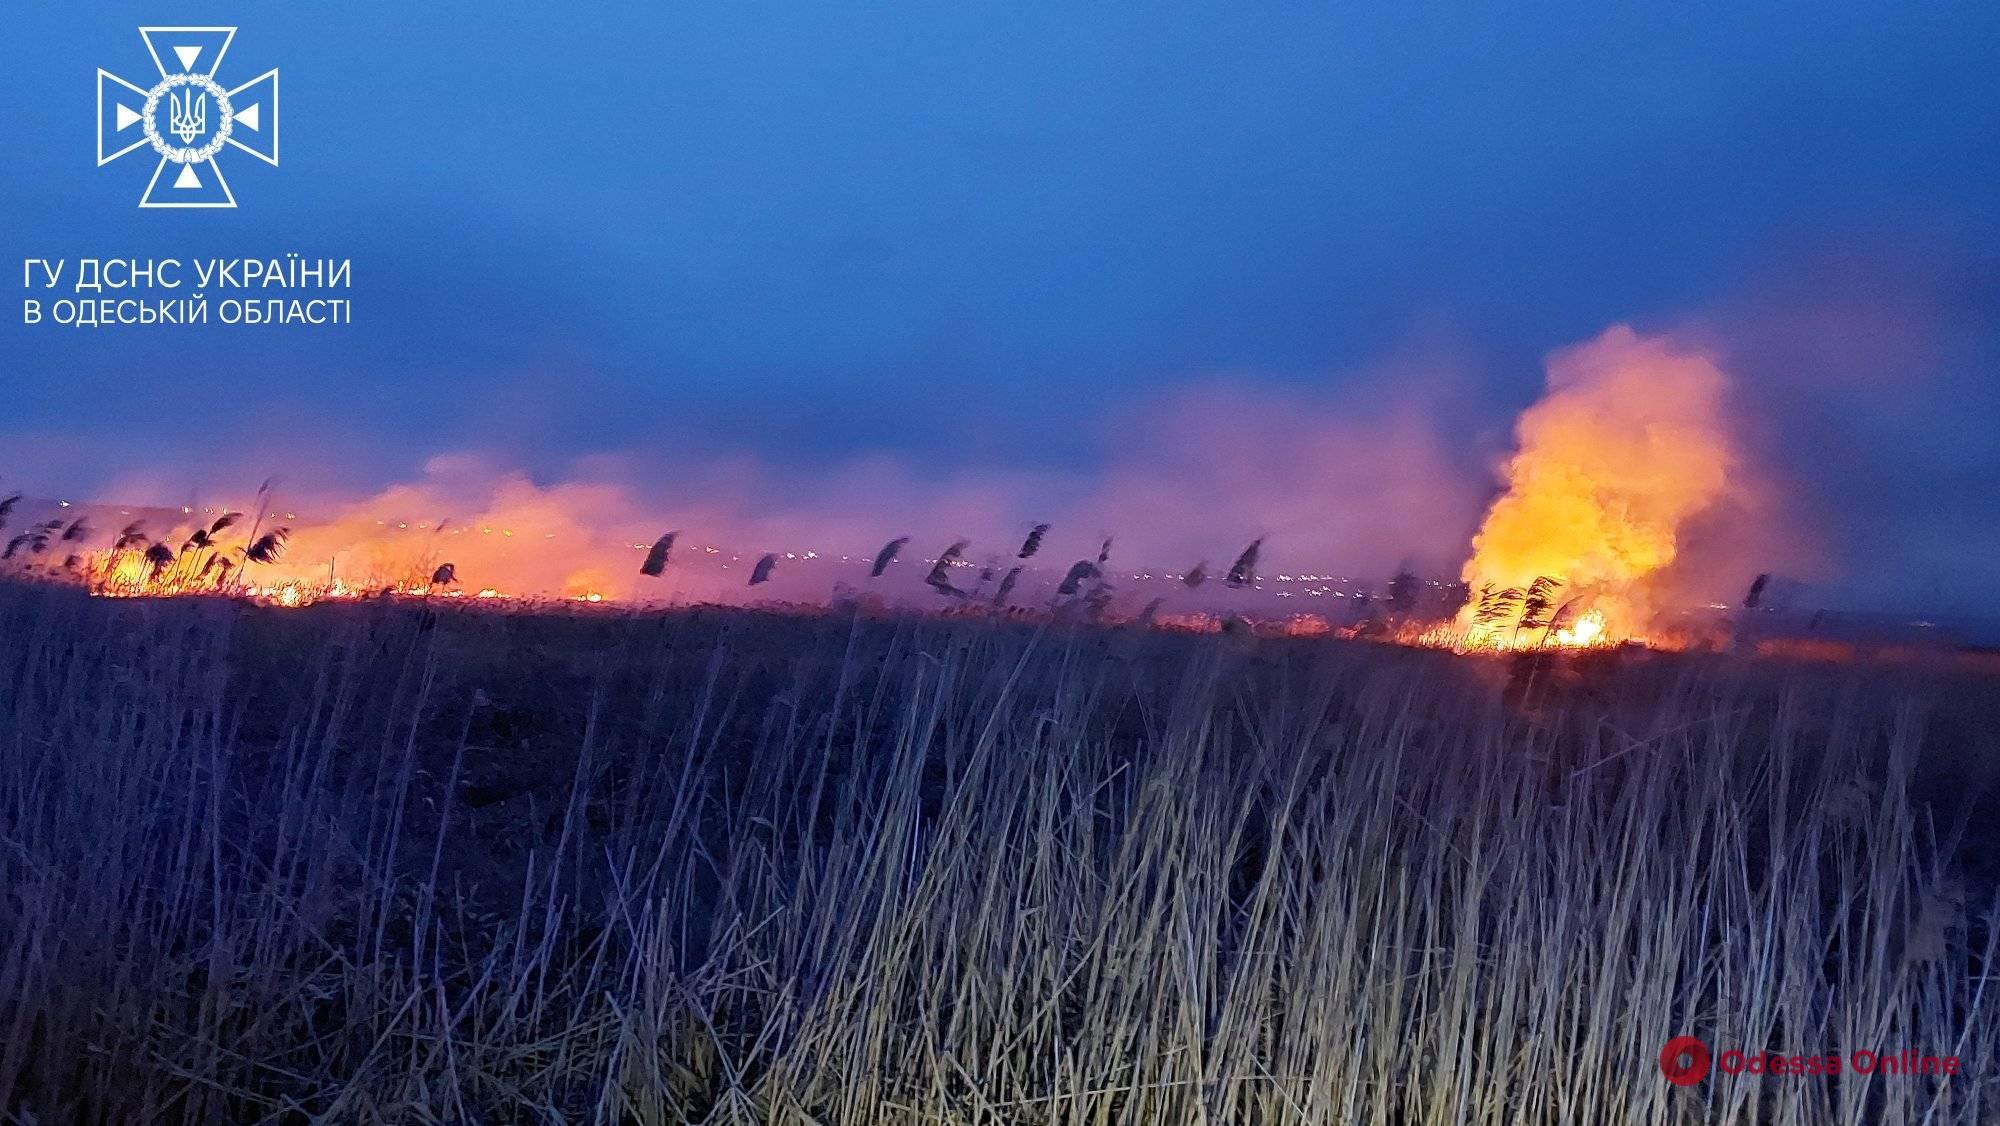 На Пересыпи произошел масштабный пожар на полях орошения (фото, видео)